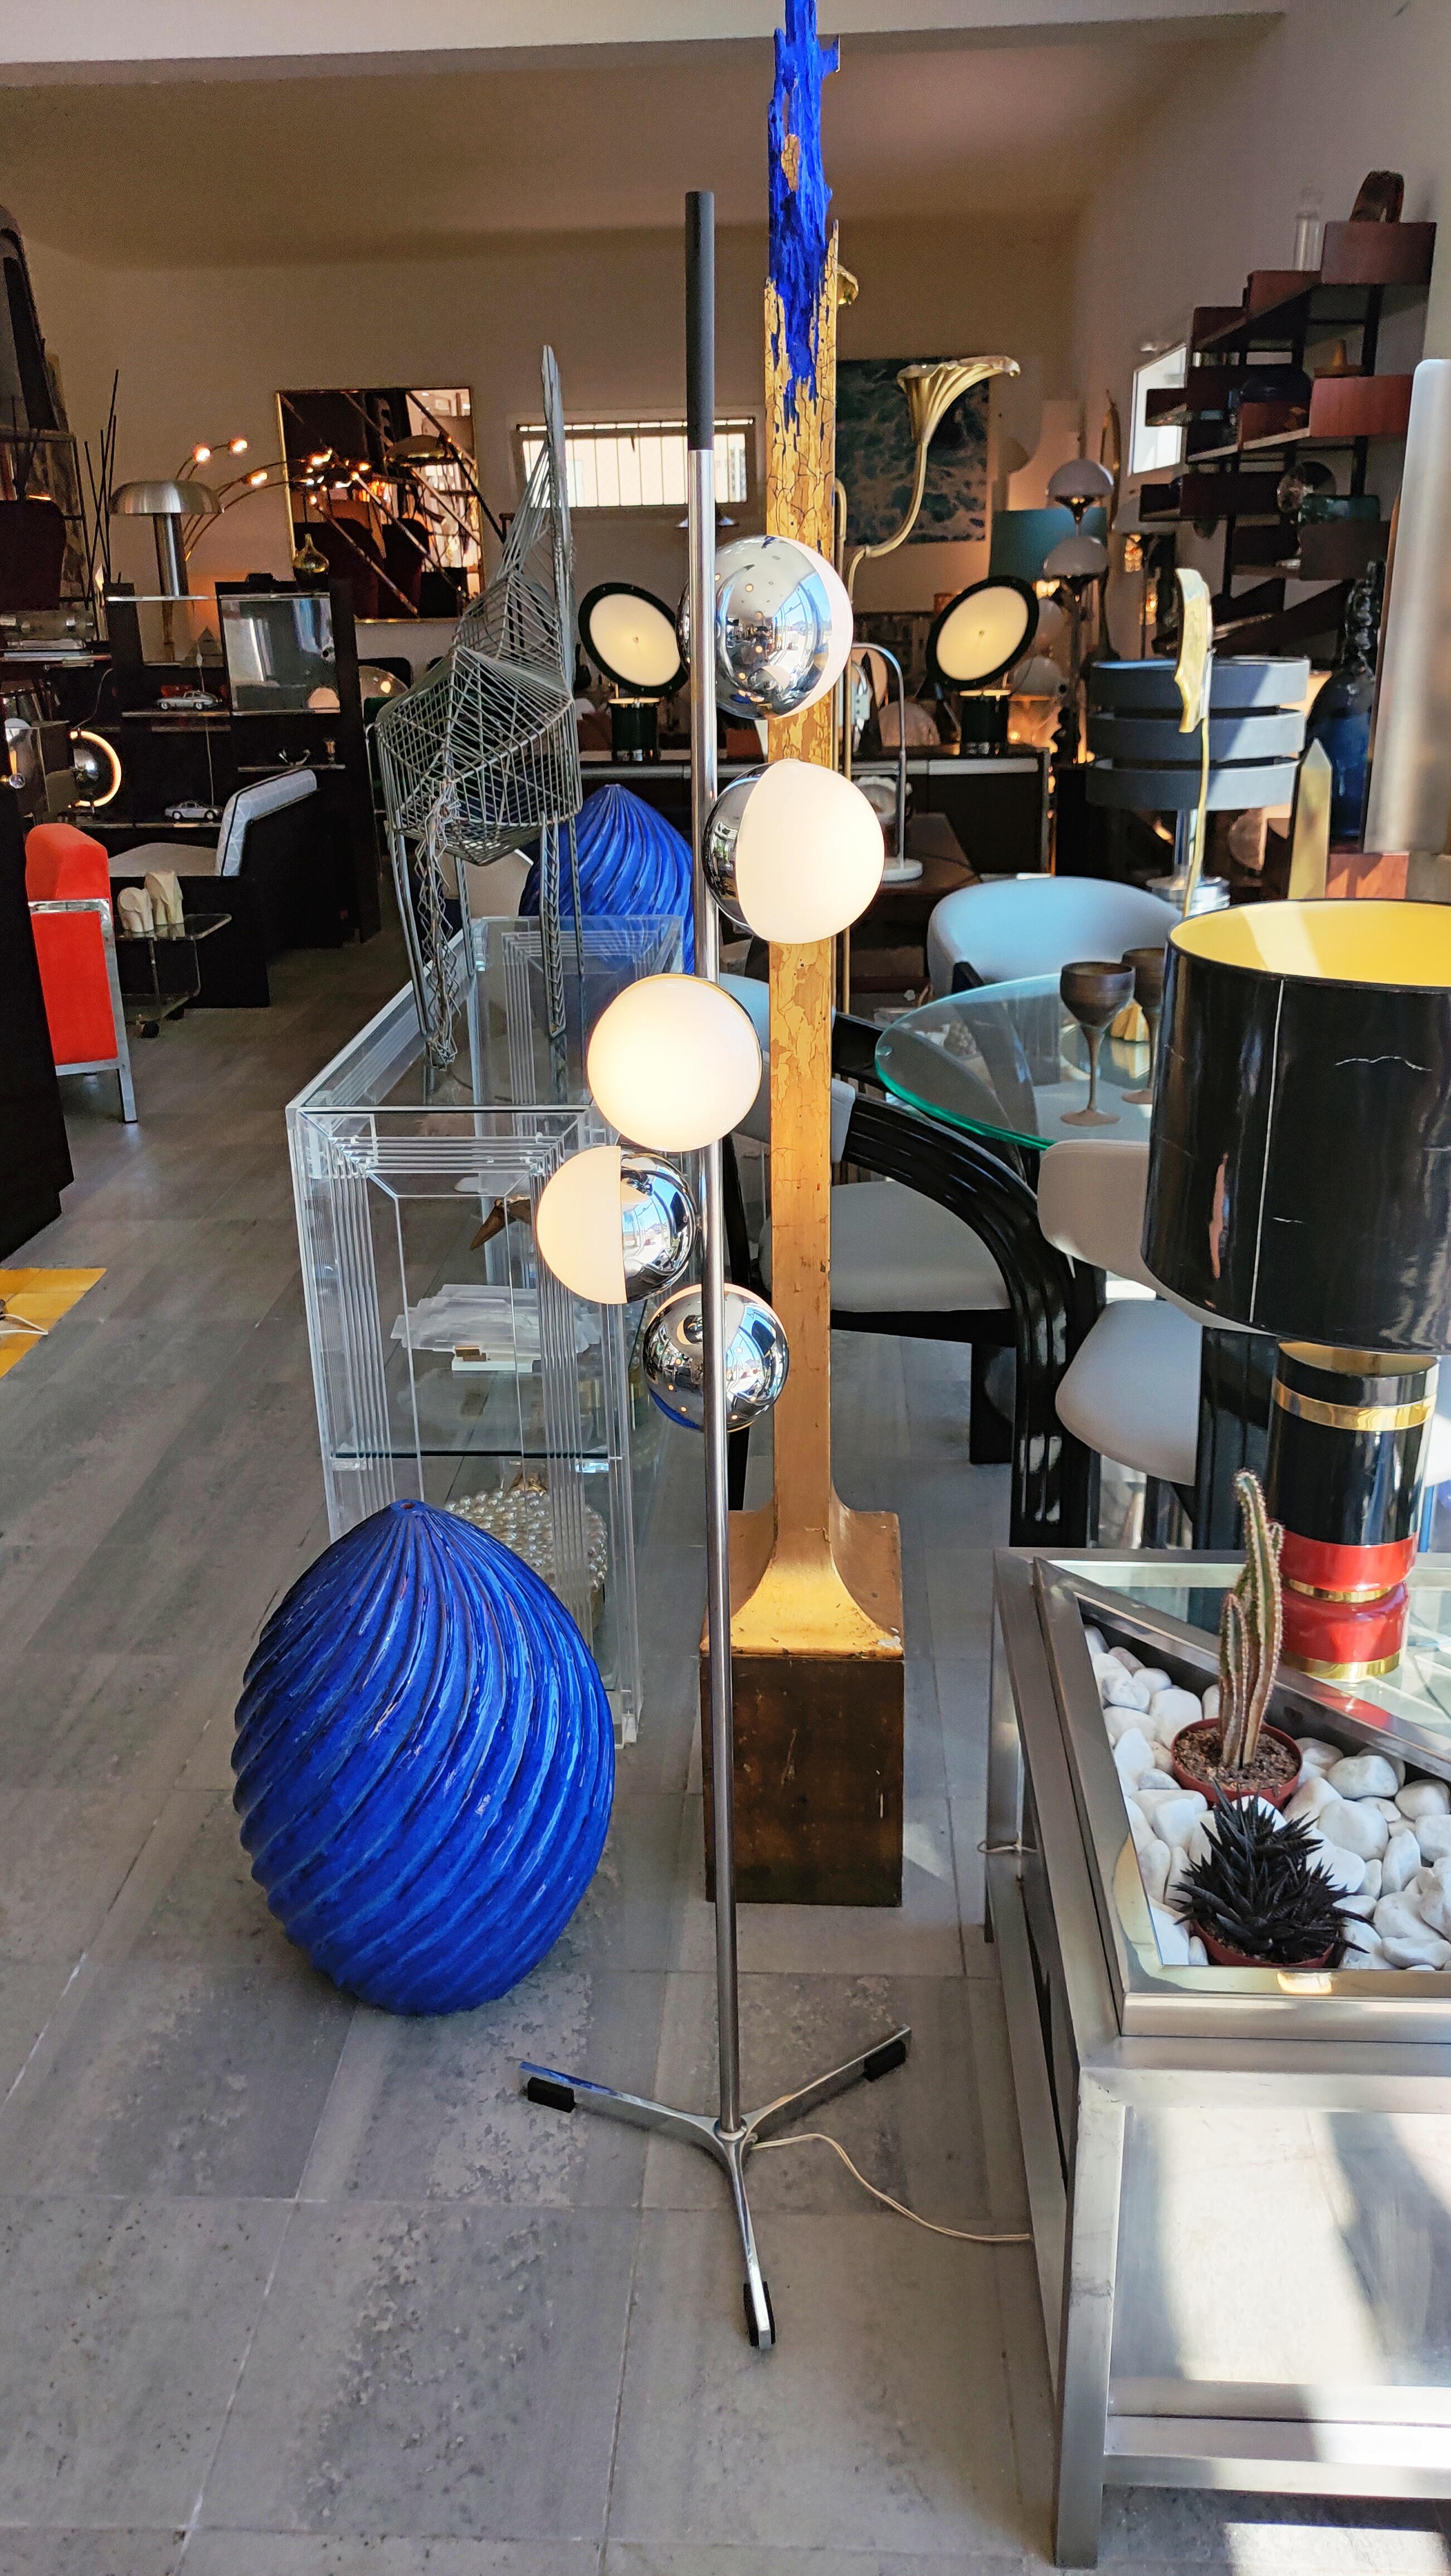 Rare et magnifique lampadaire à grande spirale fabriqué en Italie dans les années 1970.
5 globes, en parfait état vintage.